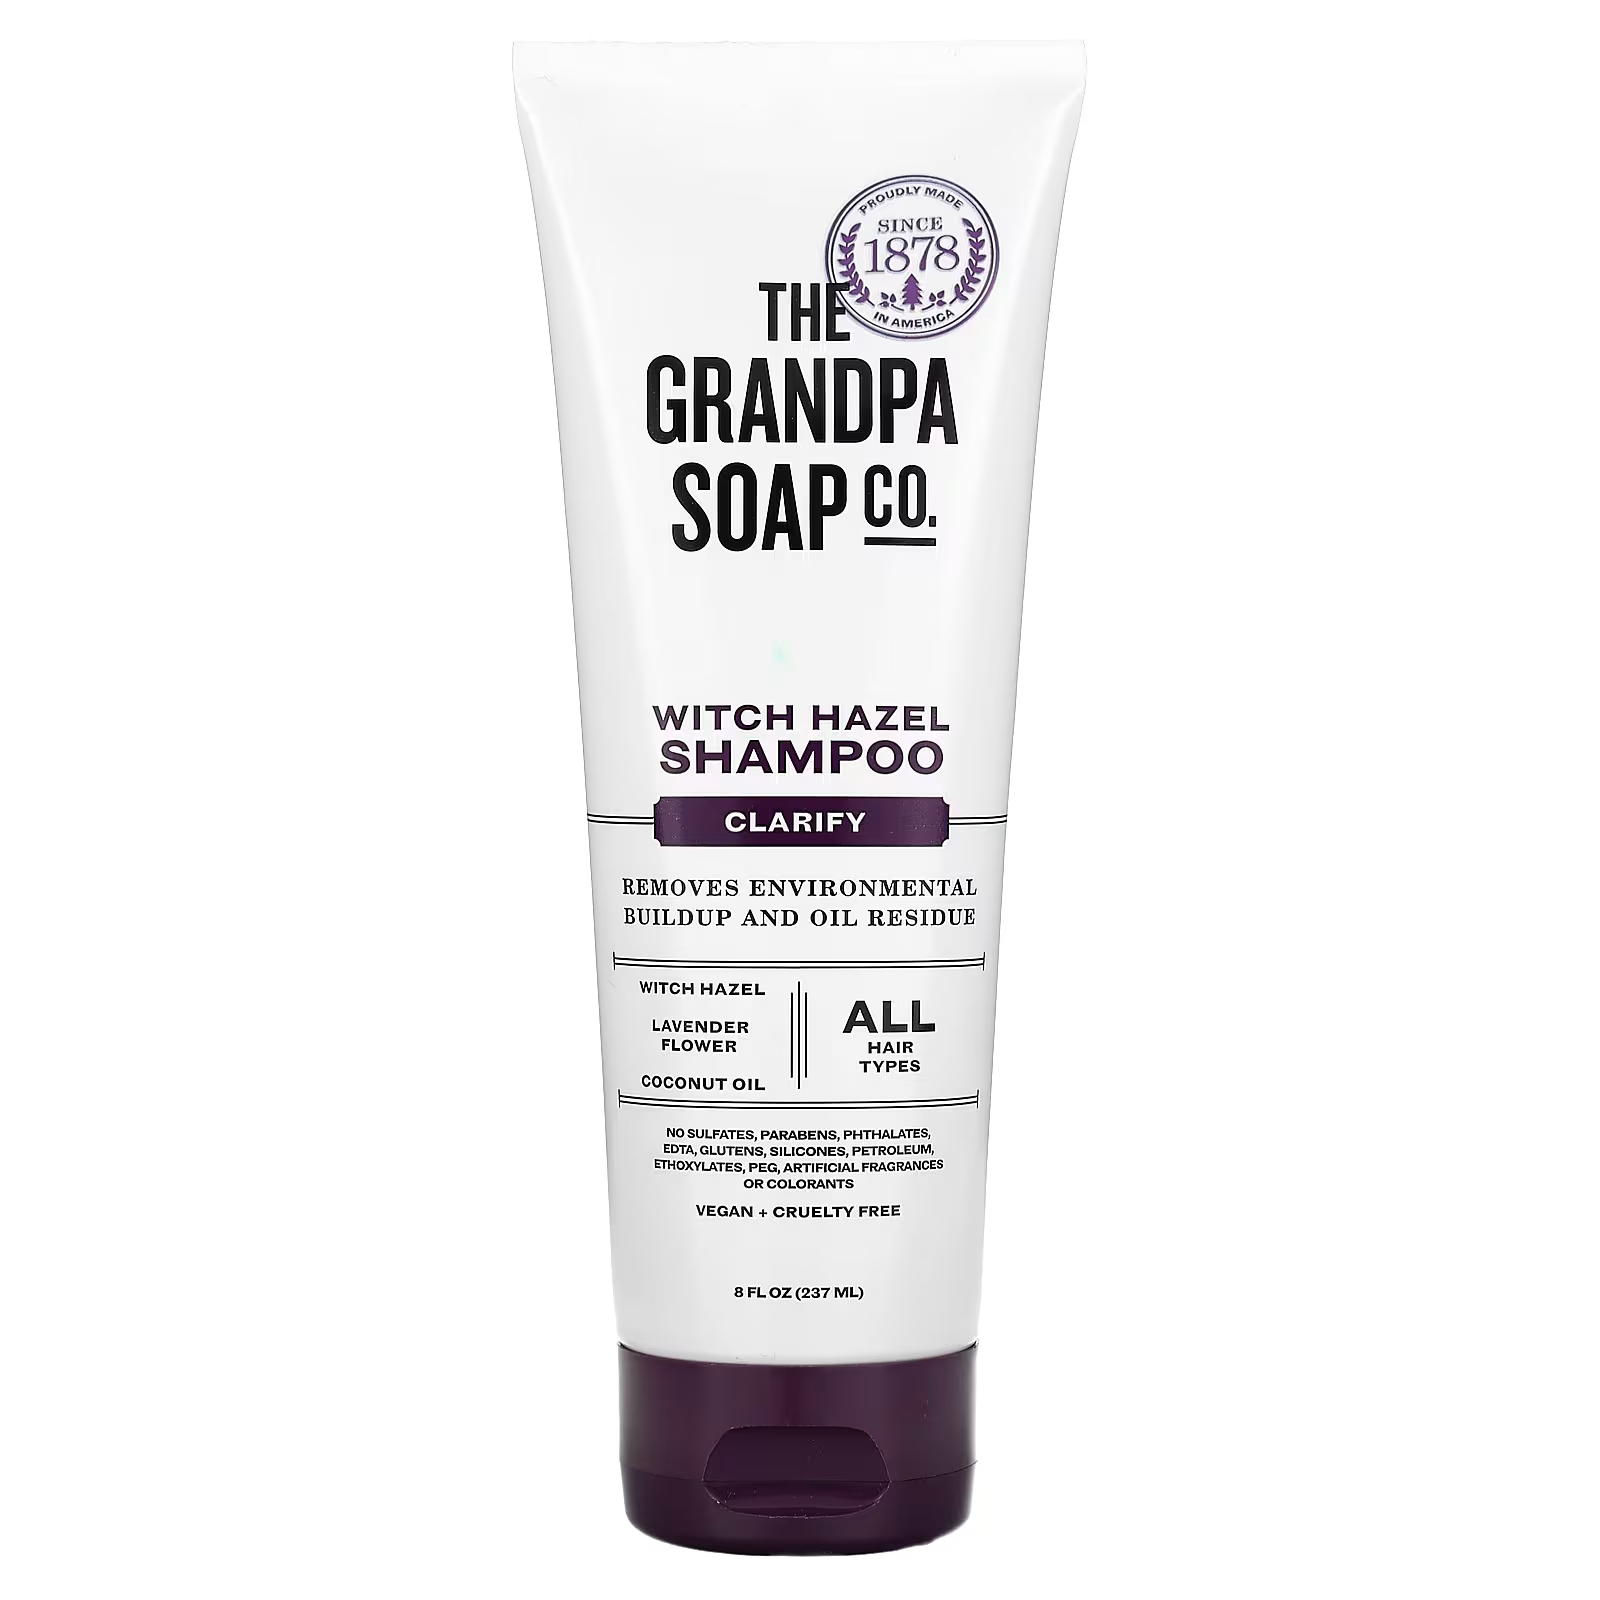 Шампунь The Grandpa Soap Co. Witch Hazel для осветления всех типов волос